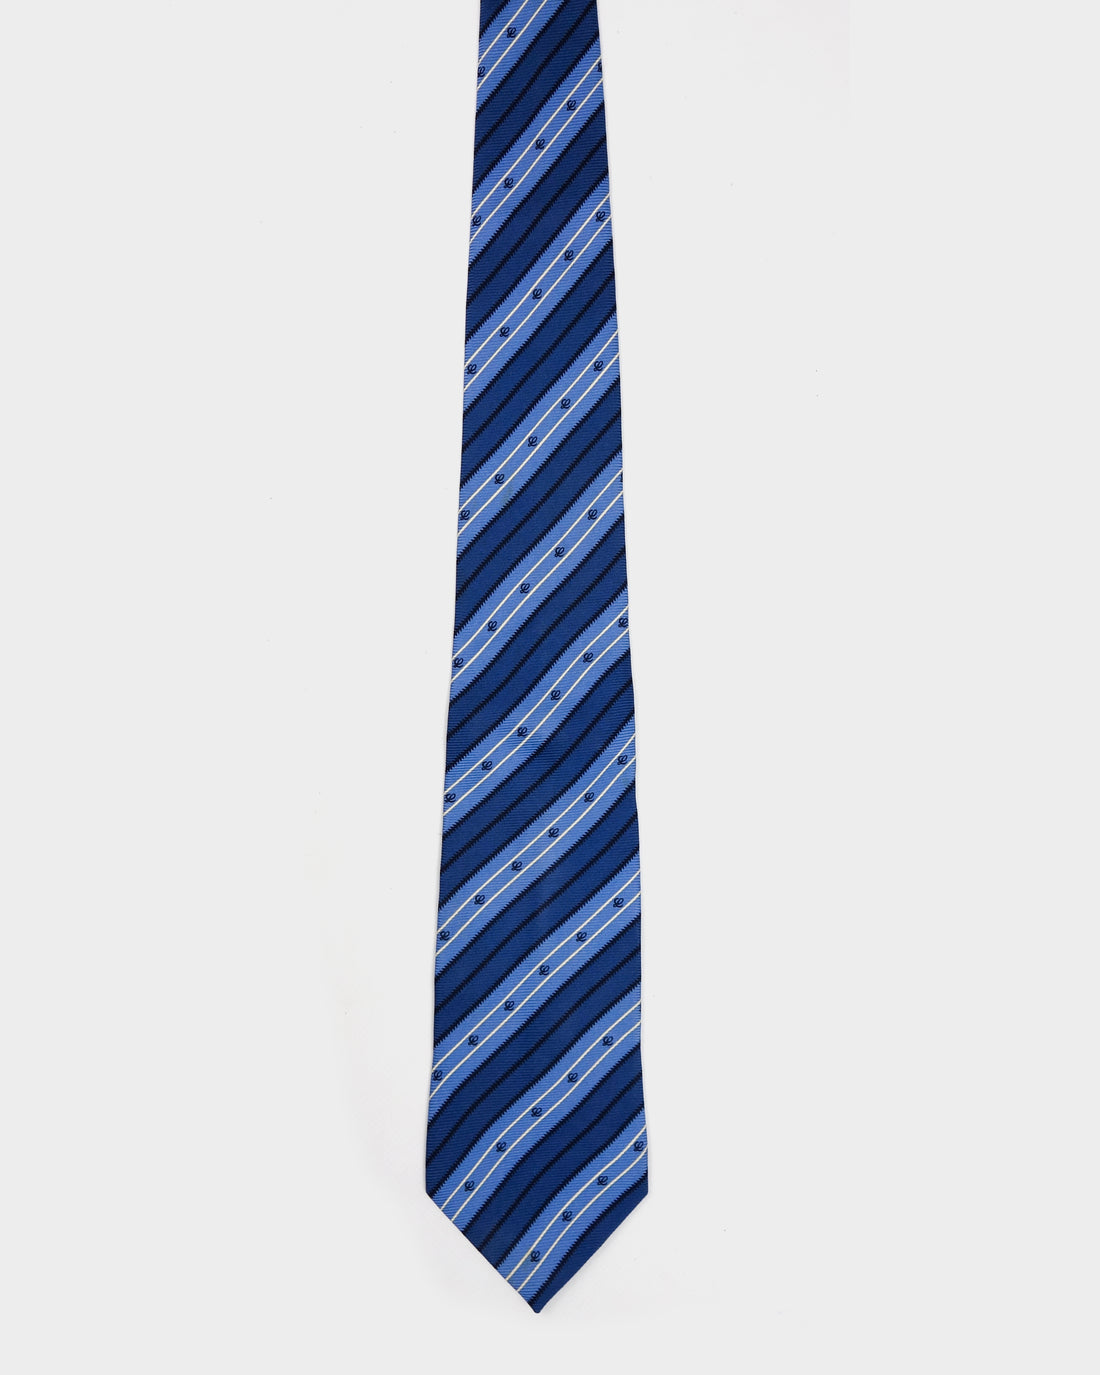 Loewe IVY Stripes Blue Silk Tie 1990's